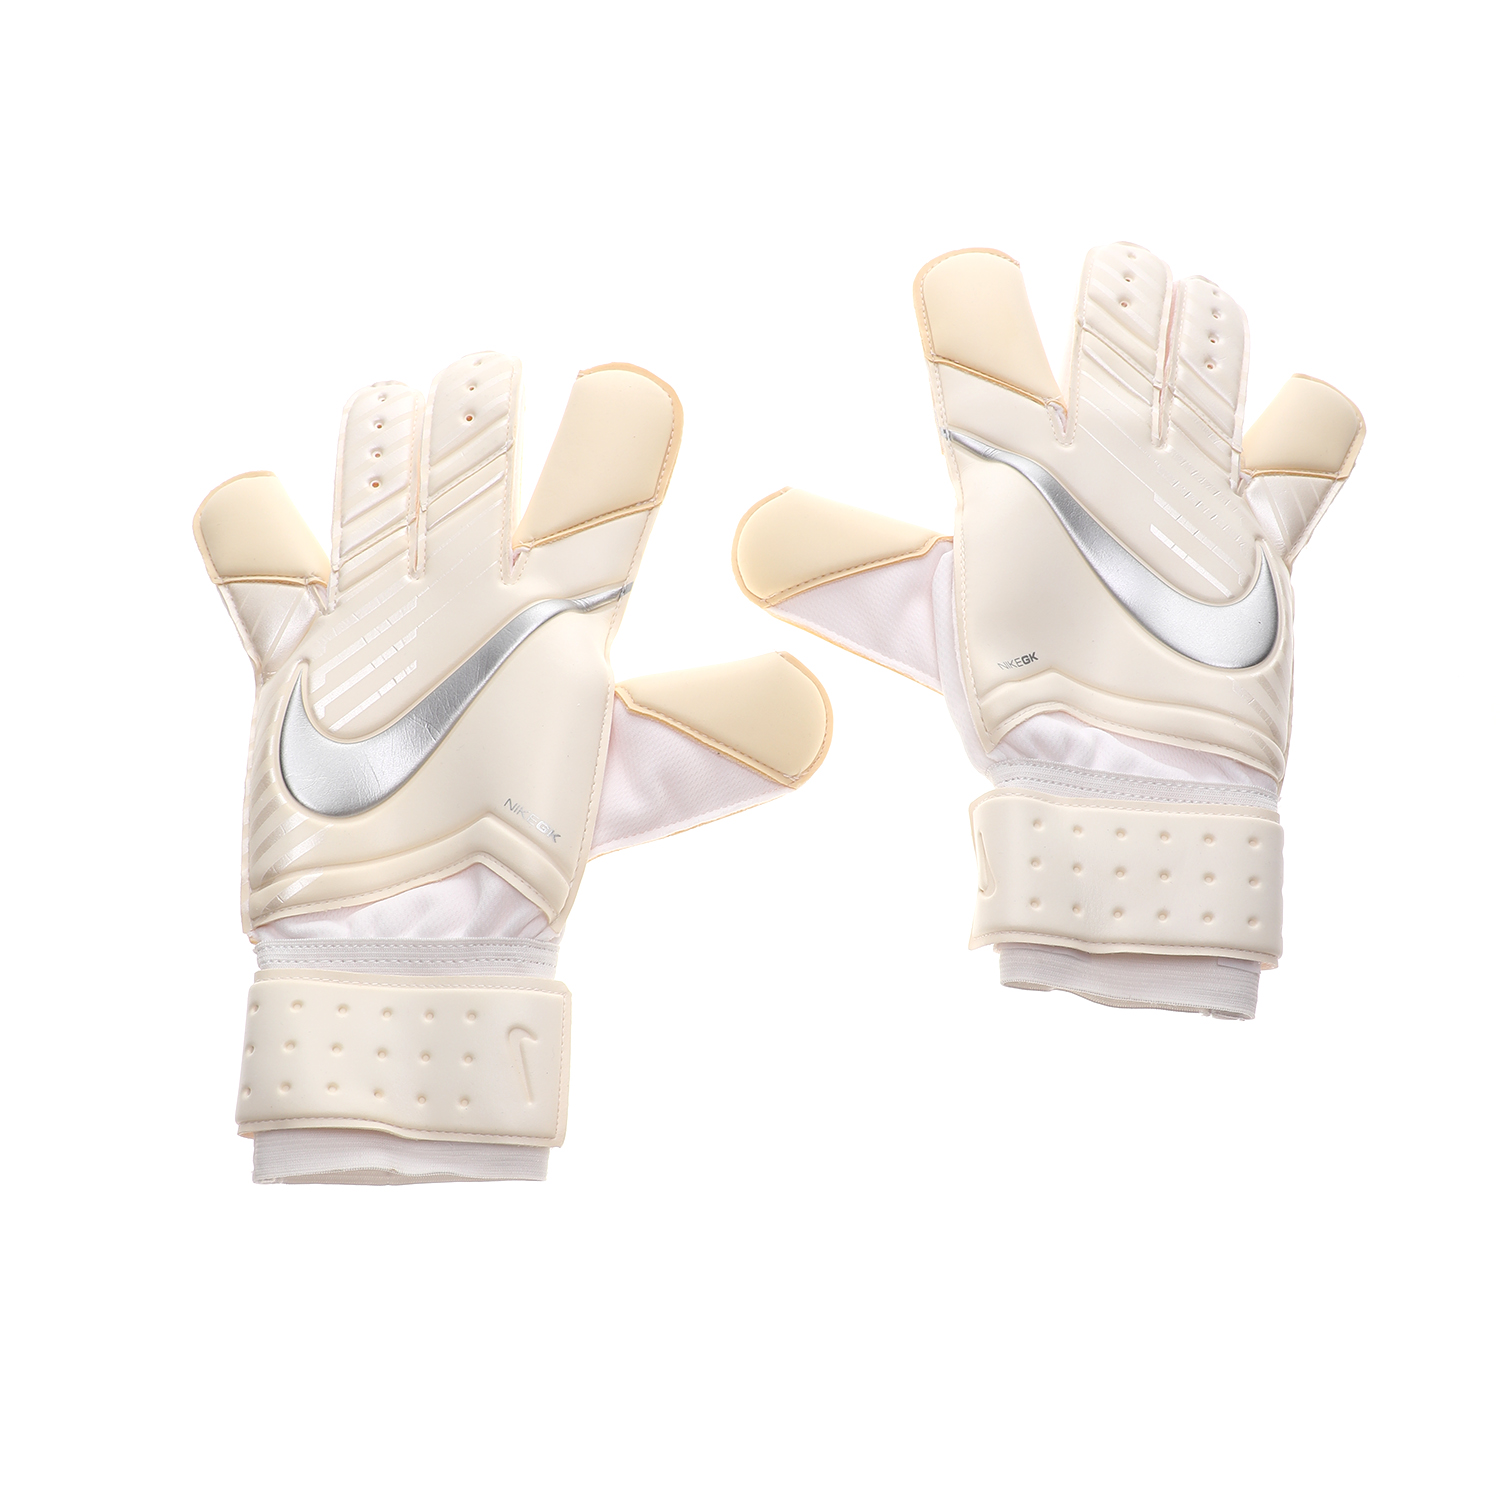 Ανδρικά/Αξεσουάρ/Αθλητικά Είδη/Εξοπλισμός NIKE - Unisex γάντια ποδοσφαίρου NIKE GK GRP3 λευκά